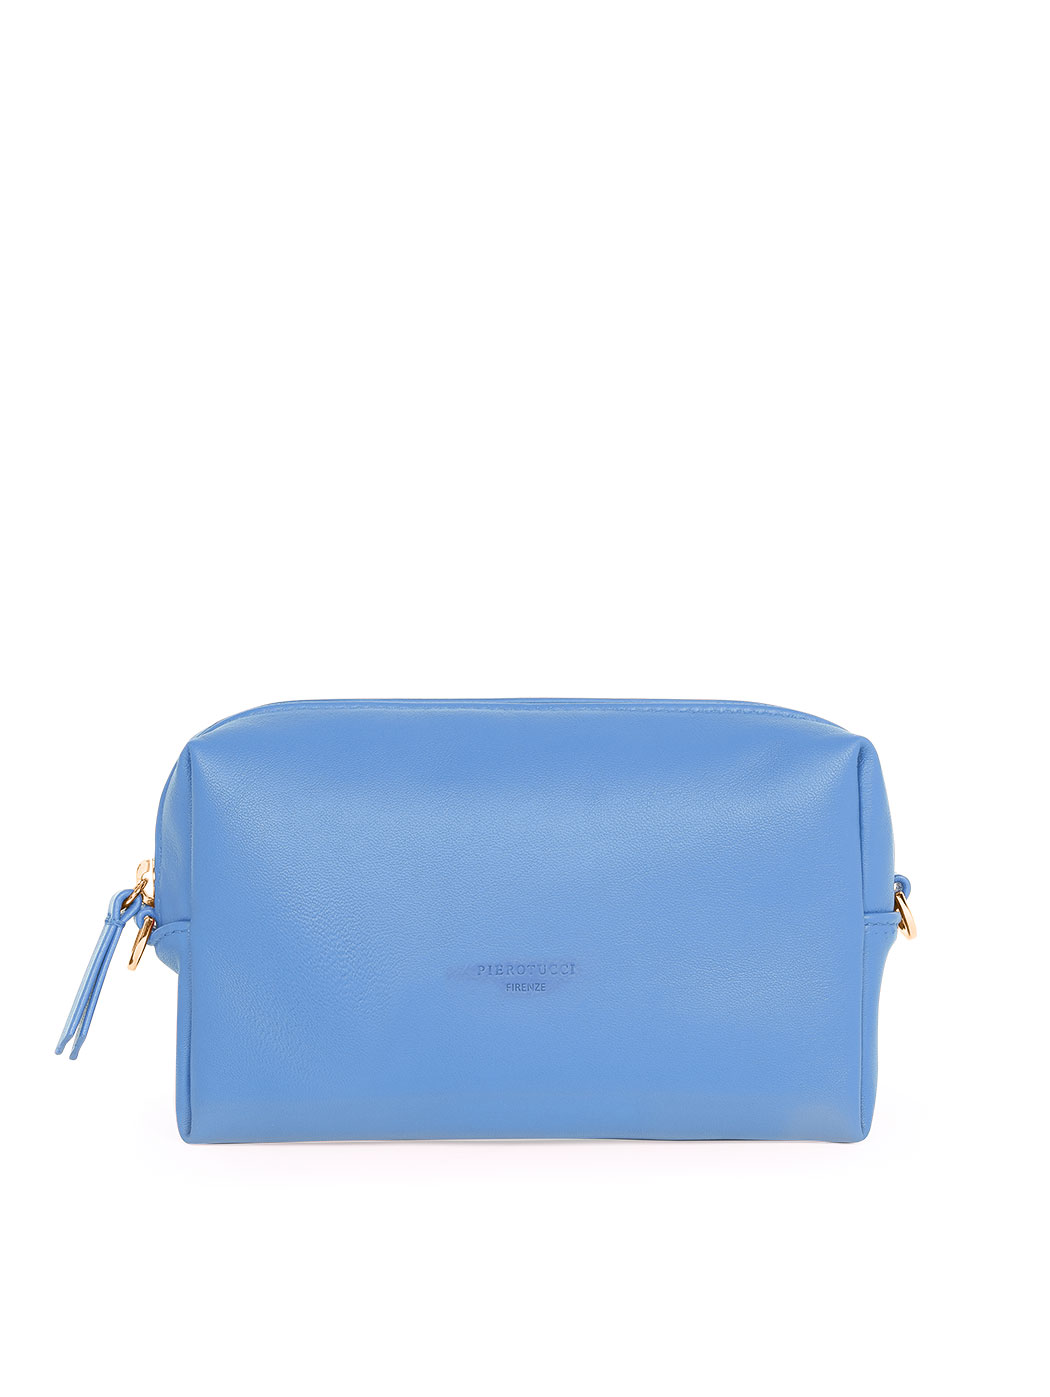 Прямоугольная сумочка с регулируемым ремнем голубого цвета